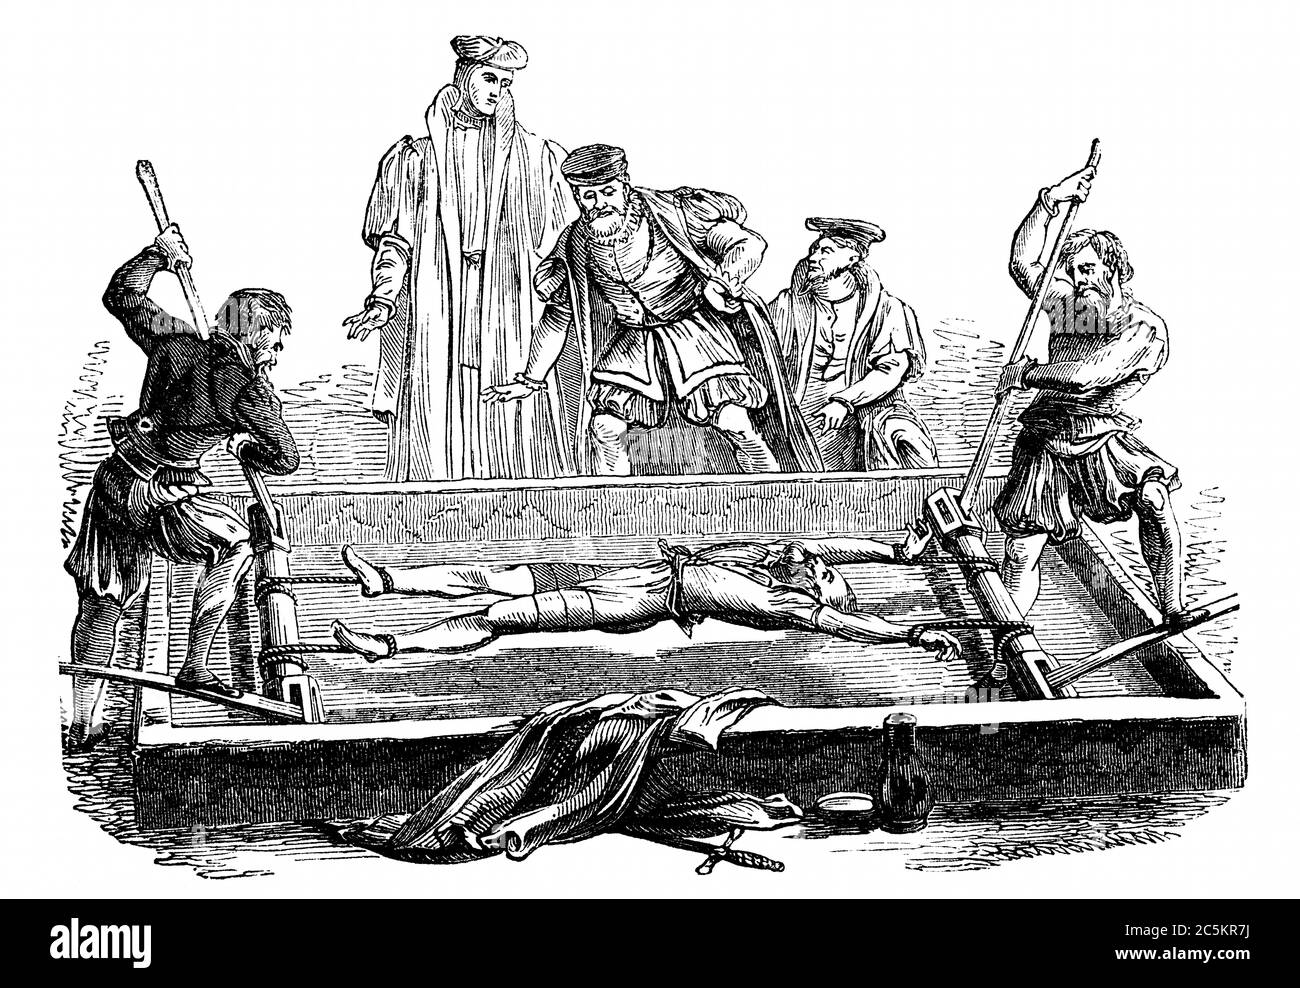 Una imagen grabada de una víctima siendo torturada en un bastidor medieval de la Edad Media en Inglaterra, Reino Unido, de un libro victoriano de 1868 que no es l Foto de stock